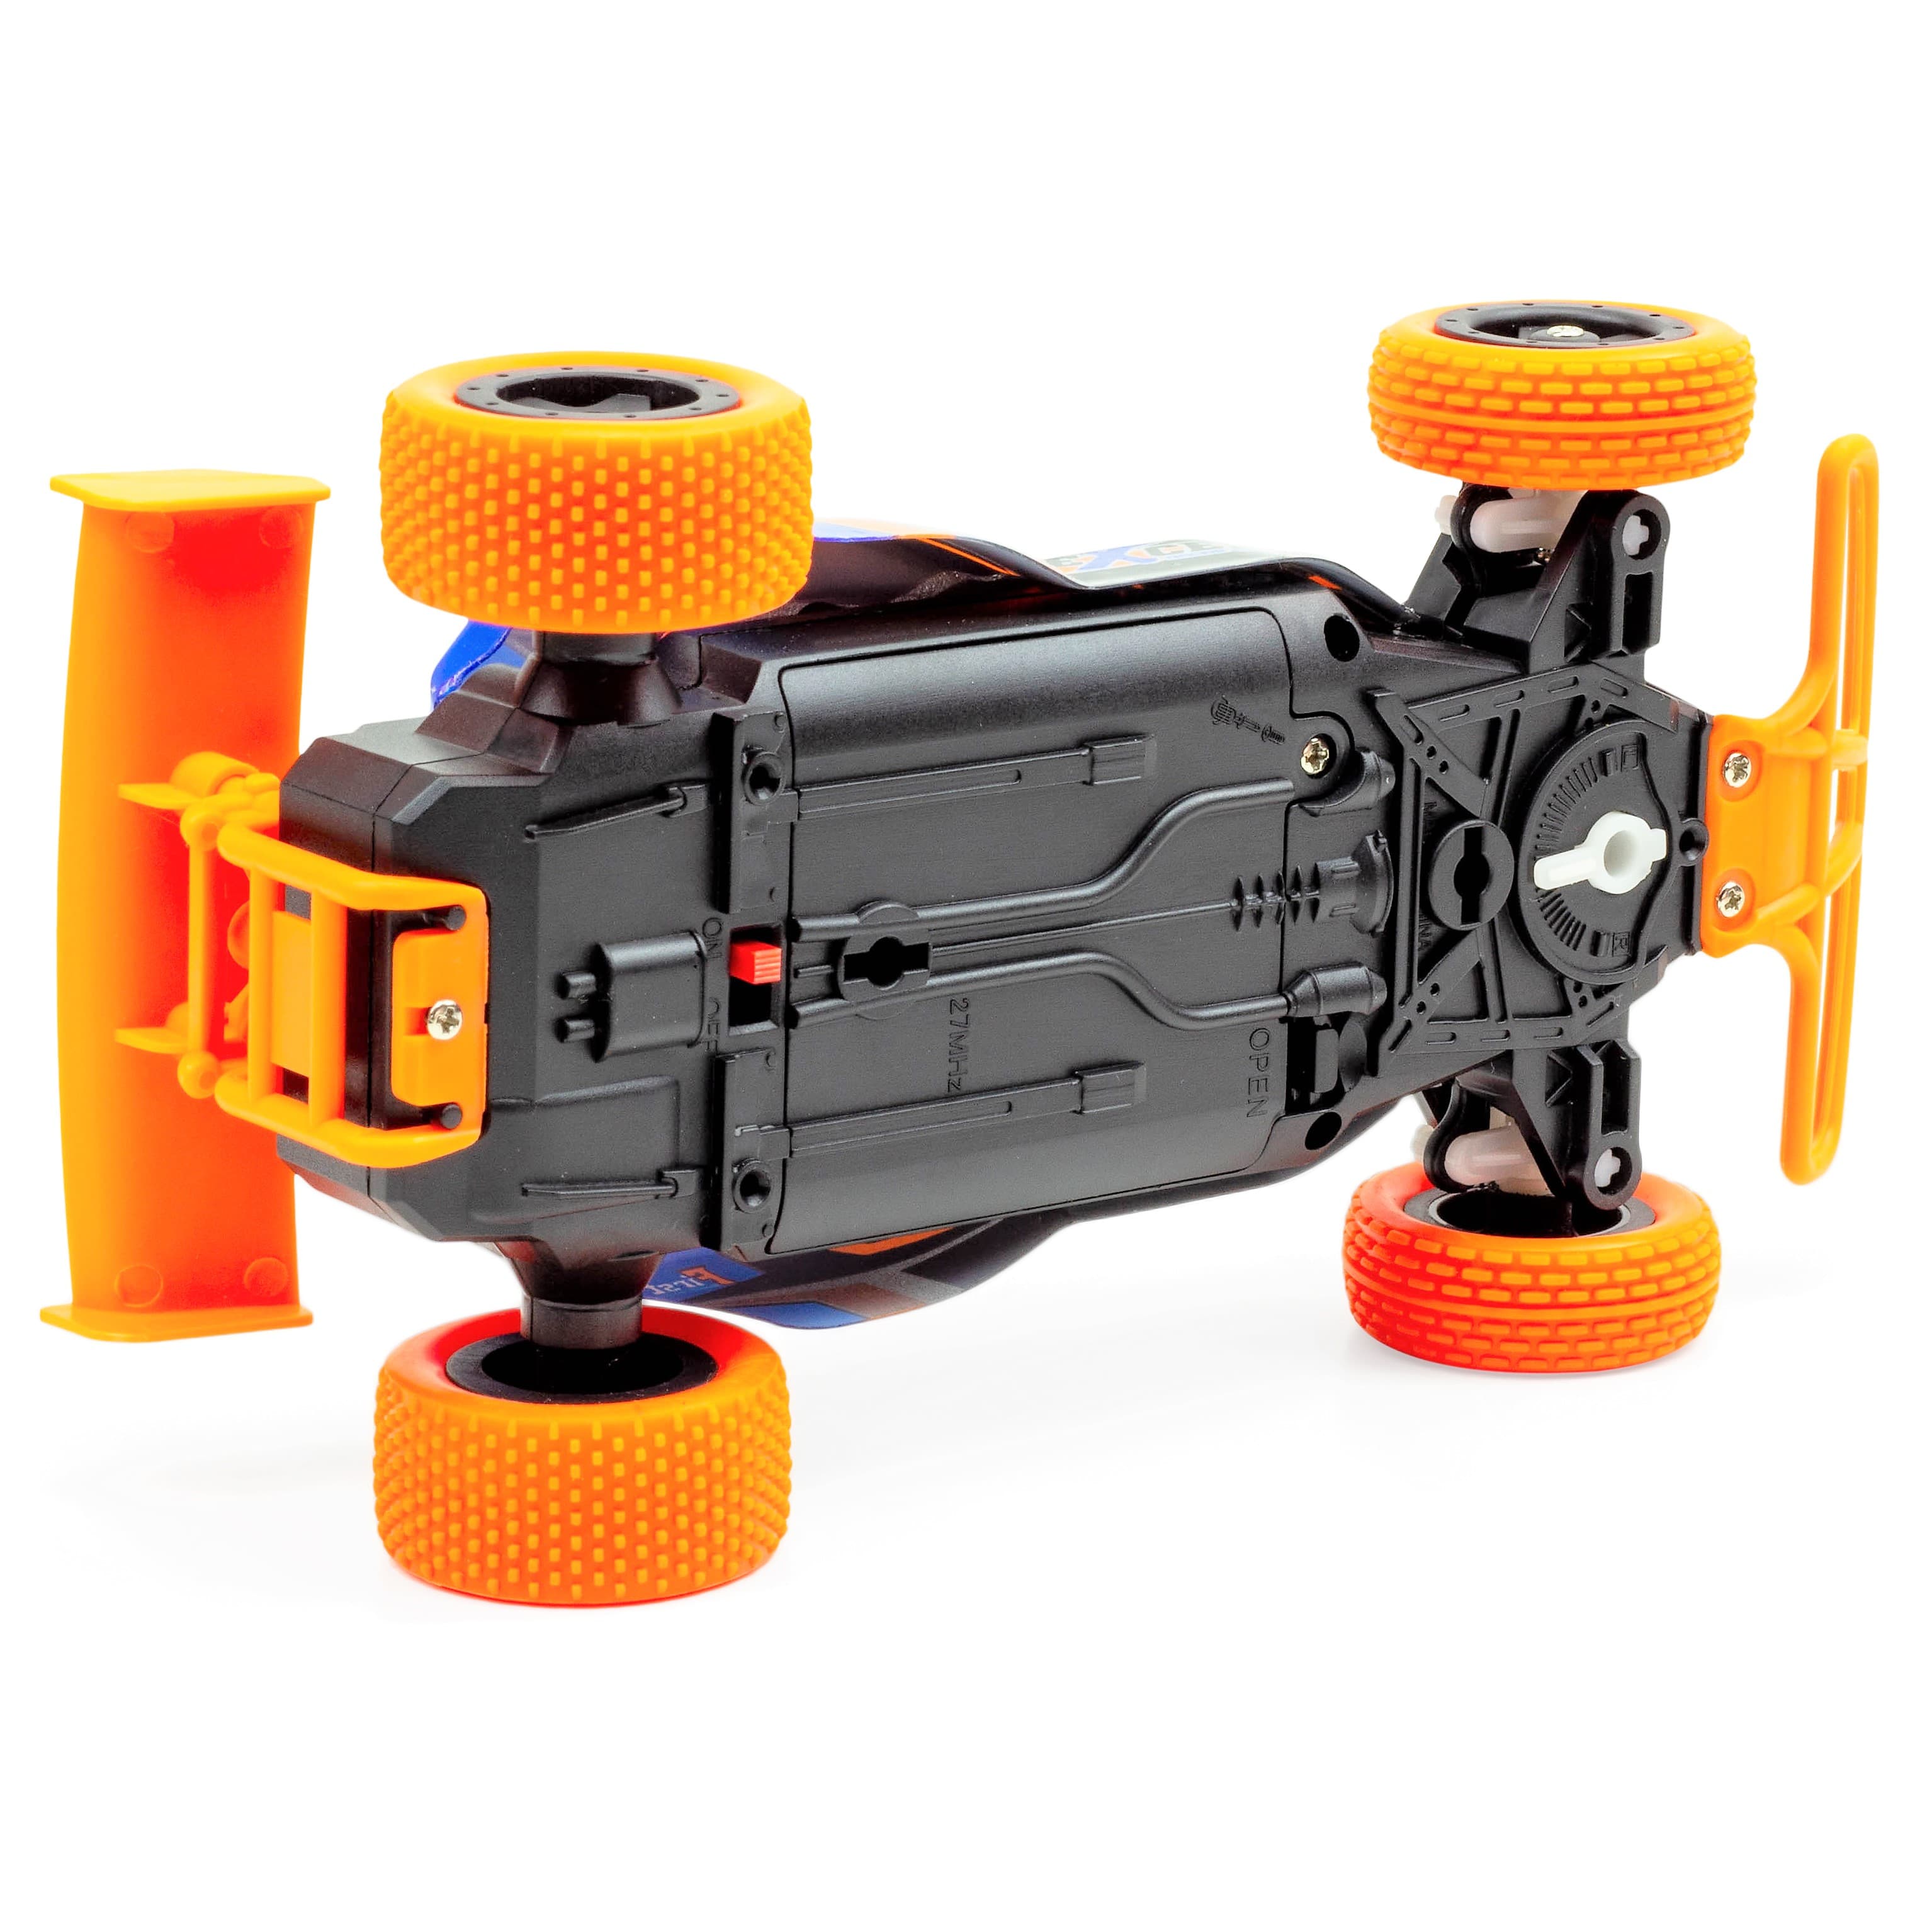 Ferngesteuertes RC Auto Spielzeug kleines 19 cm Buggys für Kinderspiel mit Akku